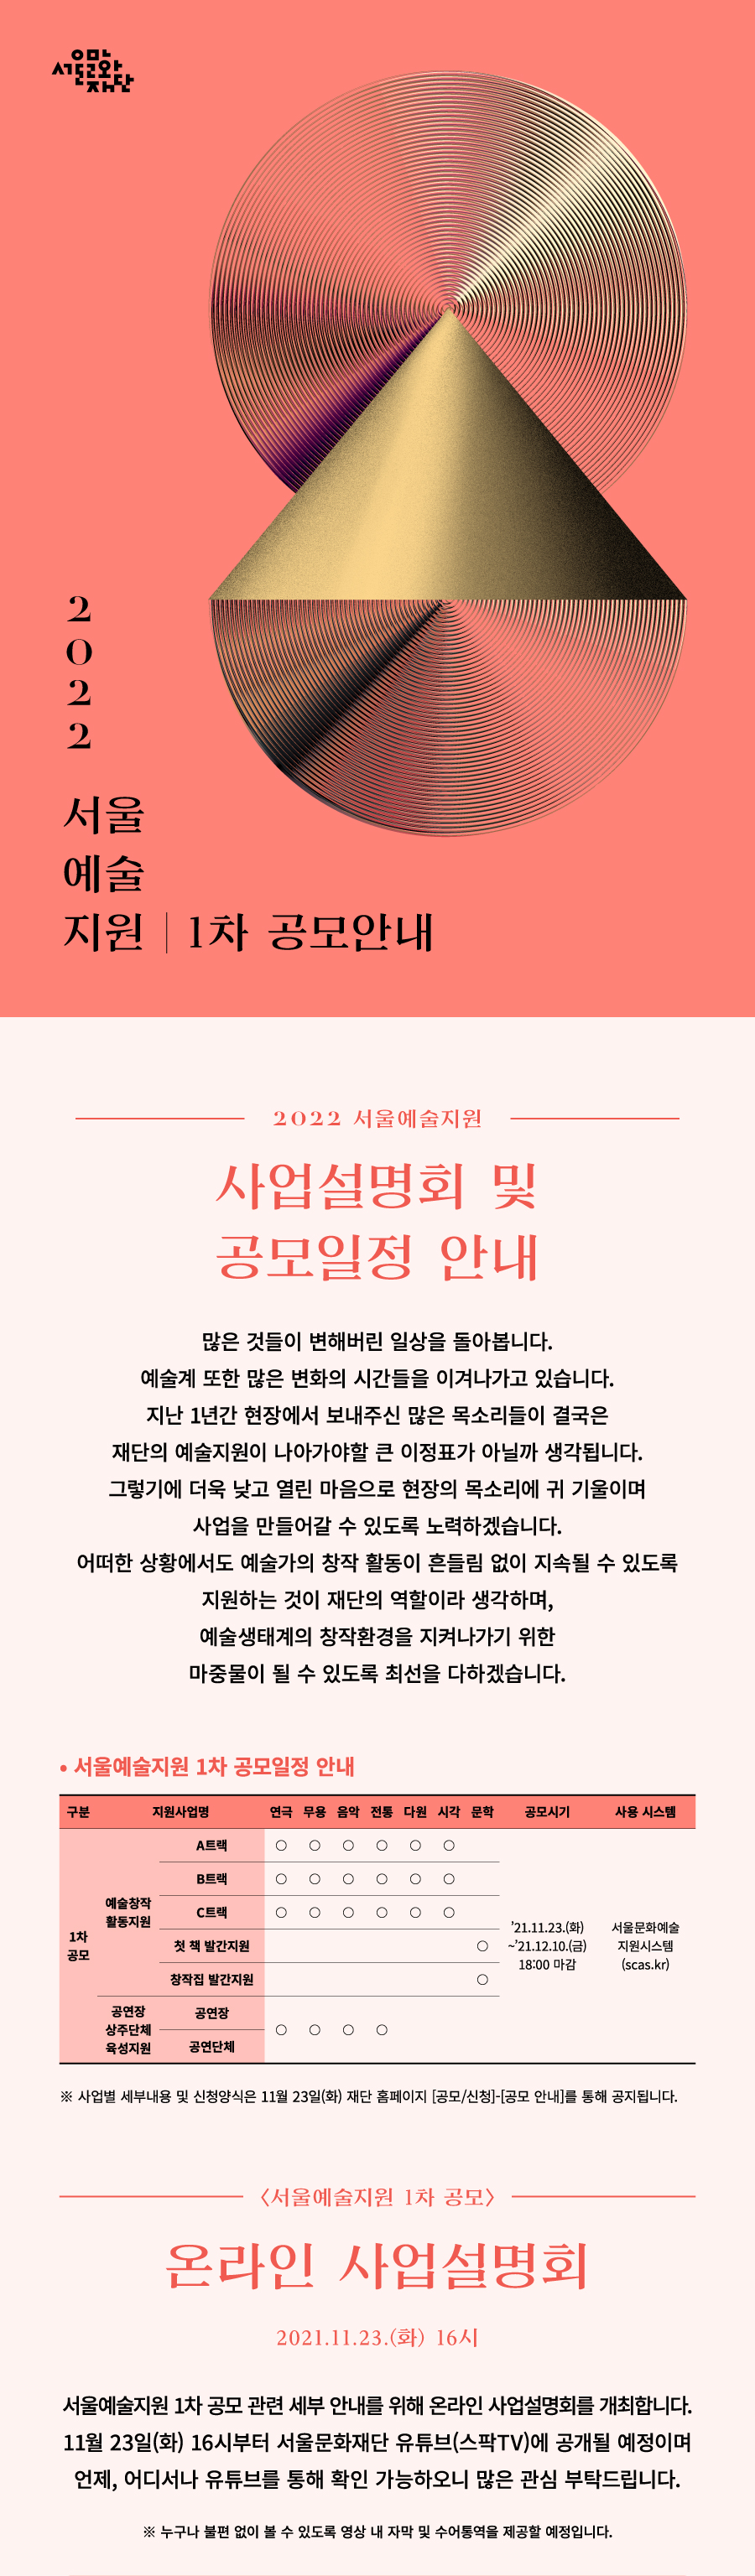 2022 서울예술지원 1차 공모 웹자보1